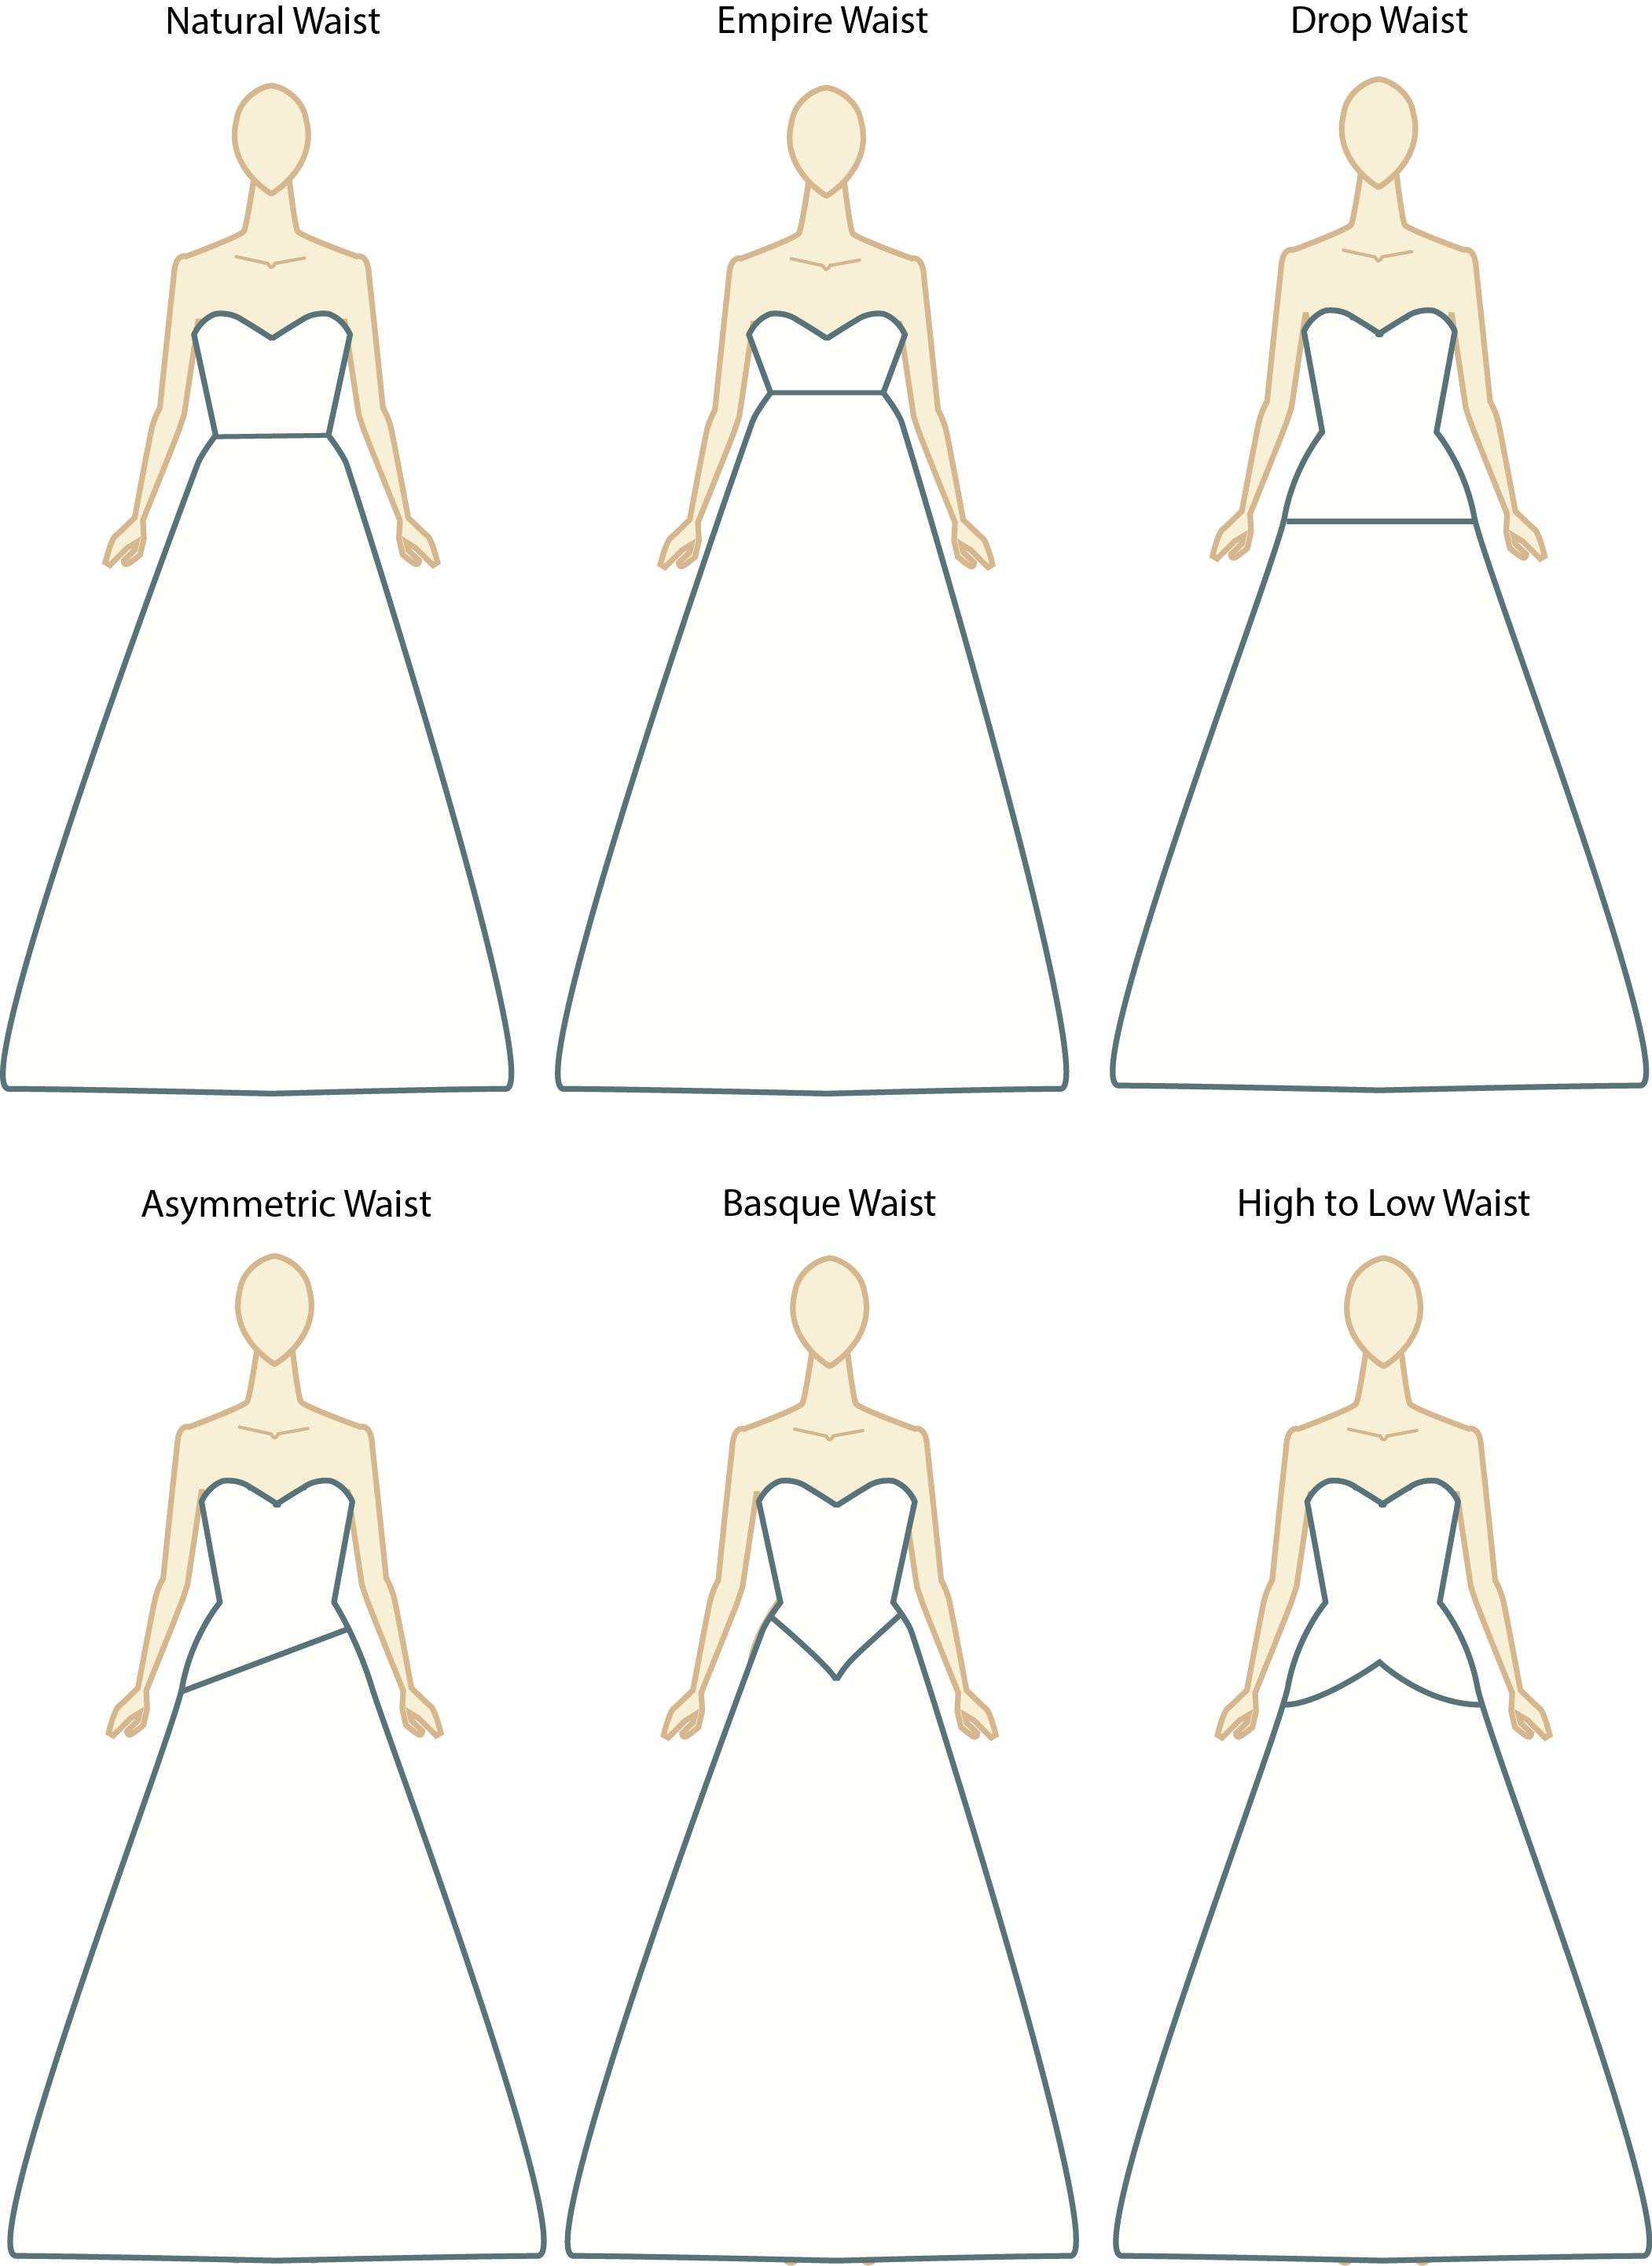 Греческое платье своими руками: выкройка и схема по шитью